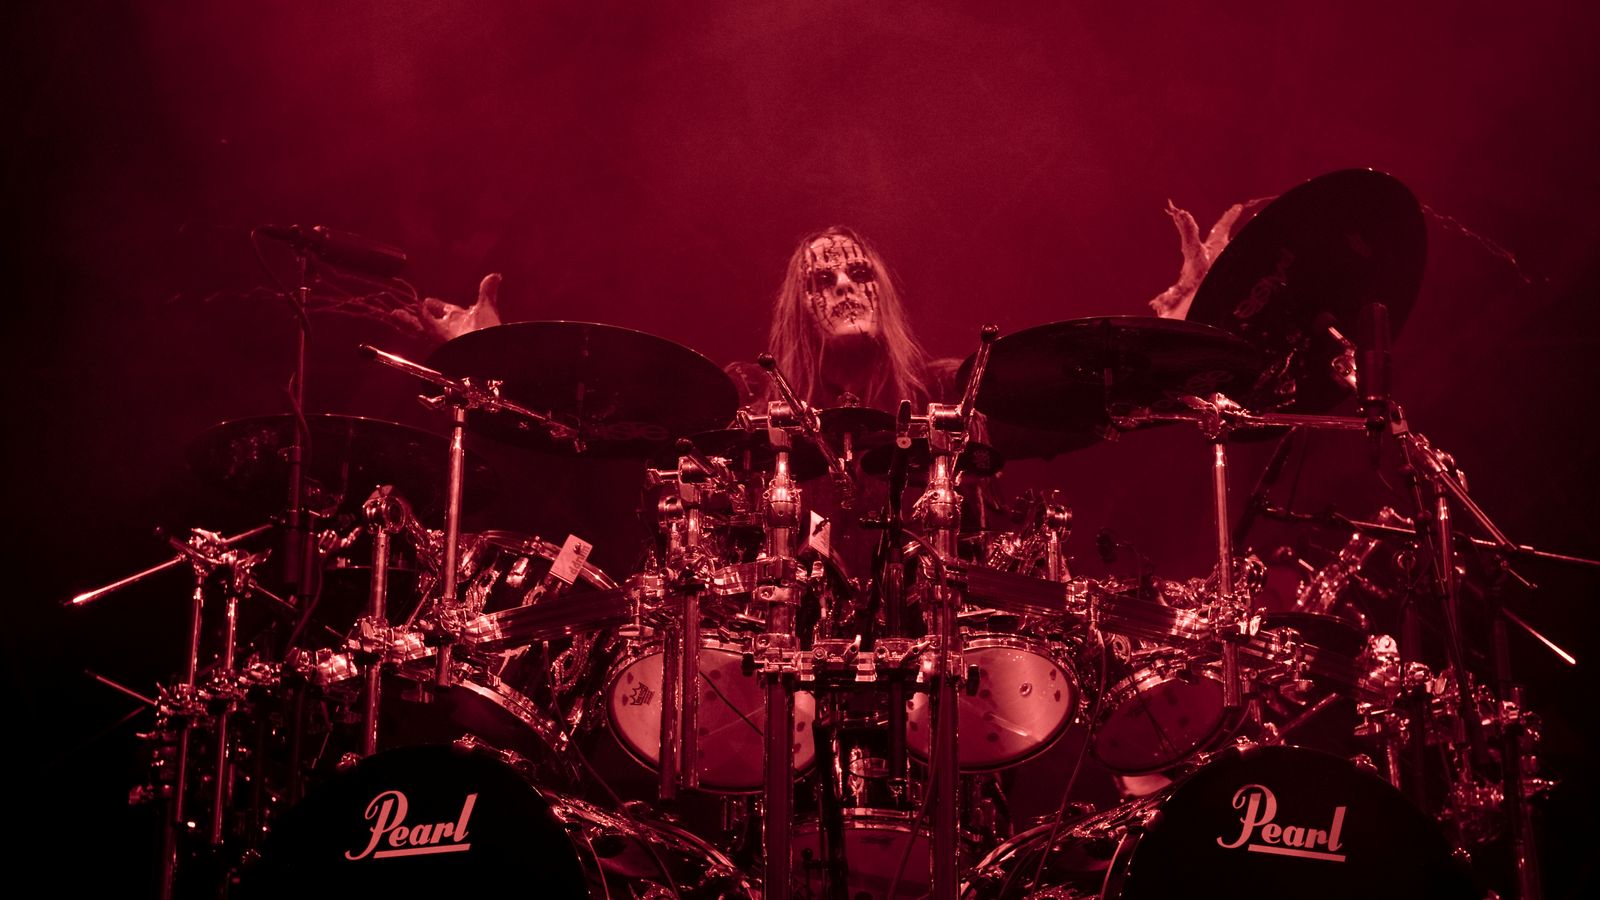 Former Slipknot drummer Joey Jordison dies aged 46. Ents & Arts News